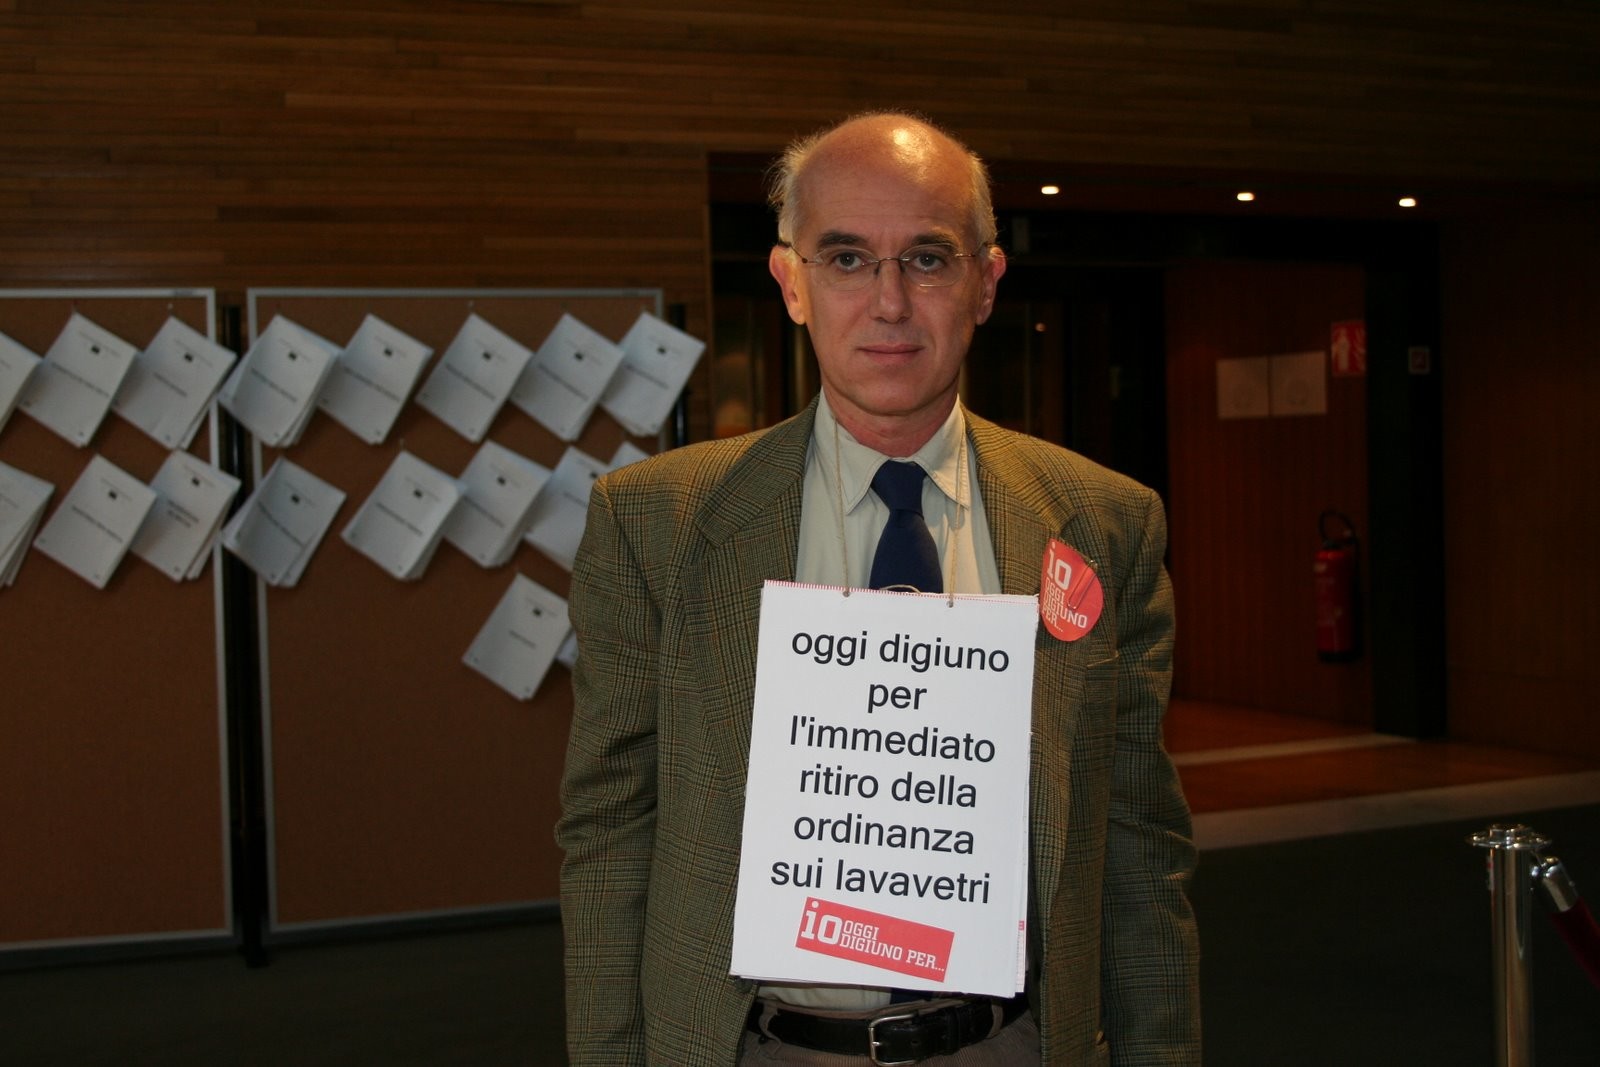 Vittorio Agnoletto al parlamento europeo durante lo sciopero della fame a staffetta organizzato per protestare contor le ordinanze fiorentine sui lavavetri